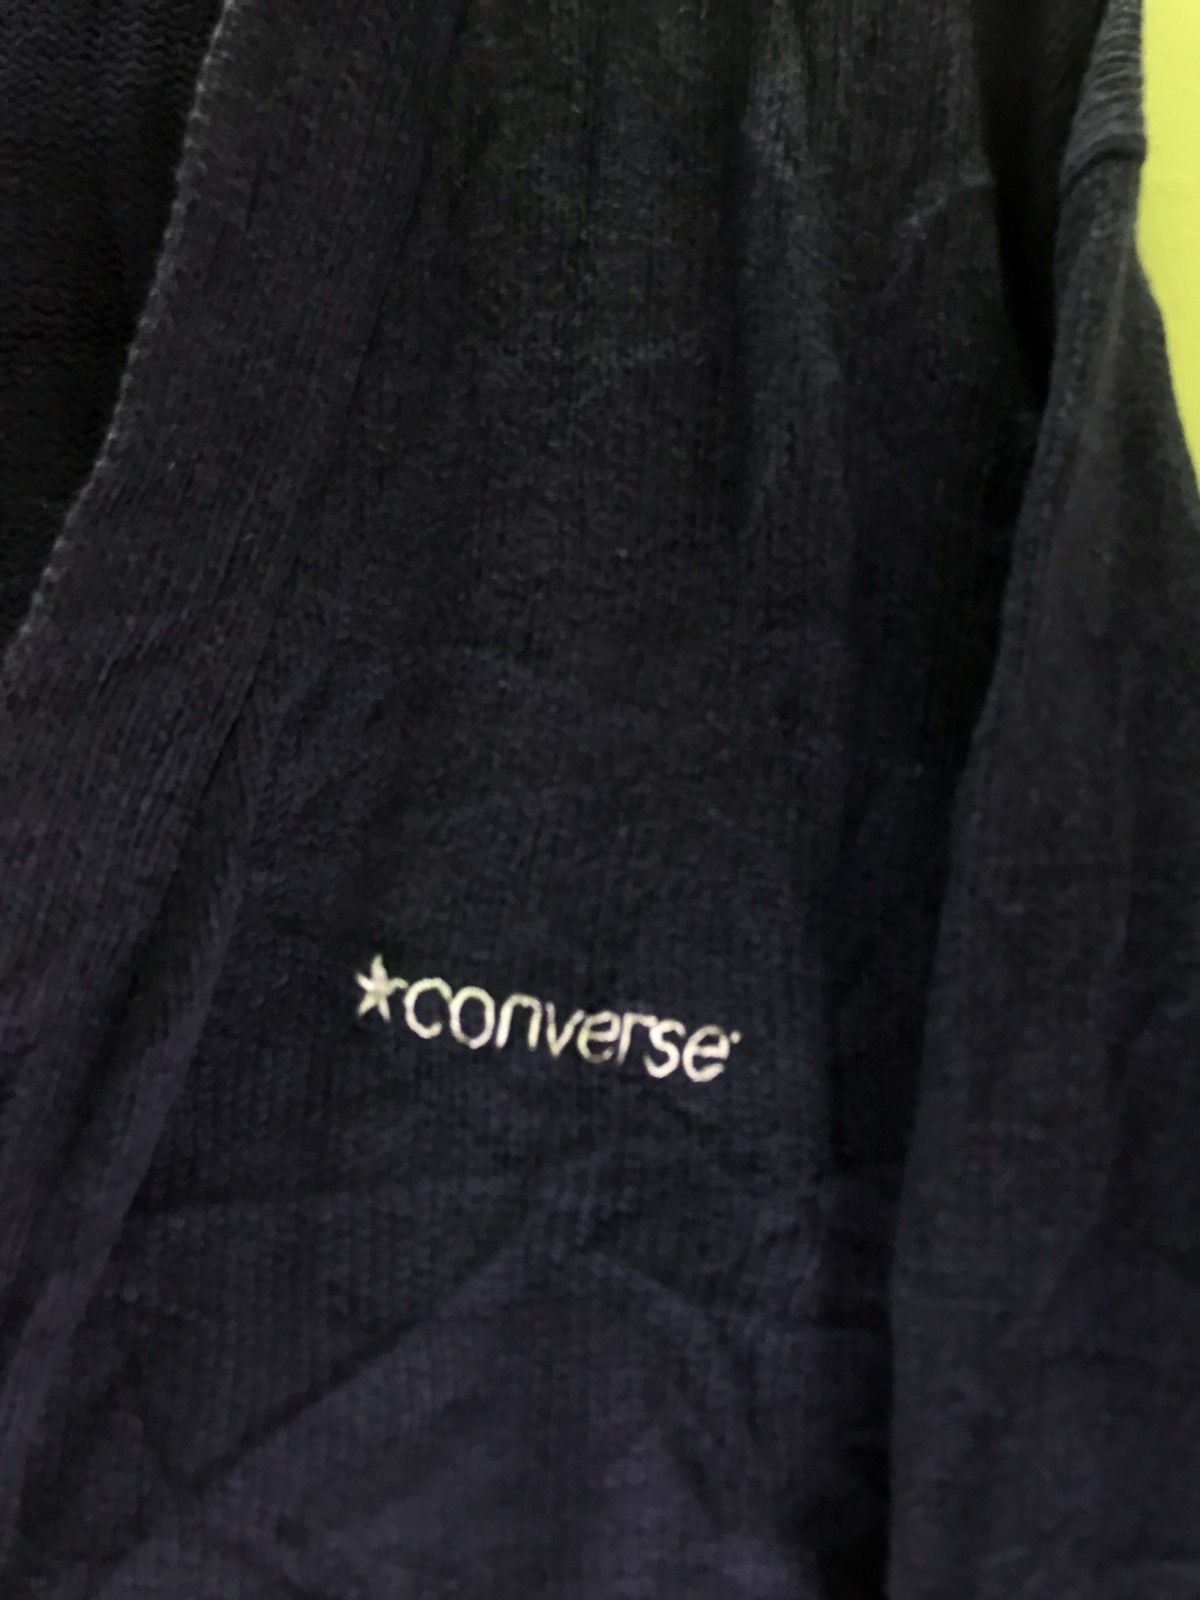 Vintage Converse Cardigan - 4